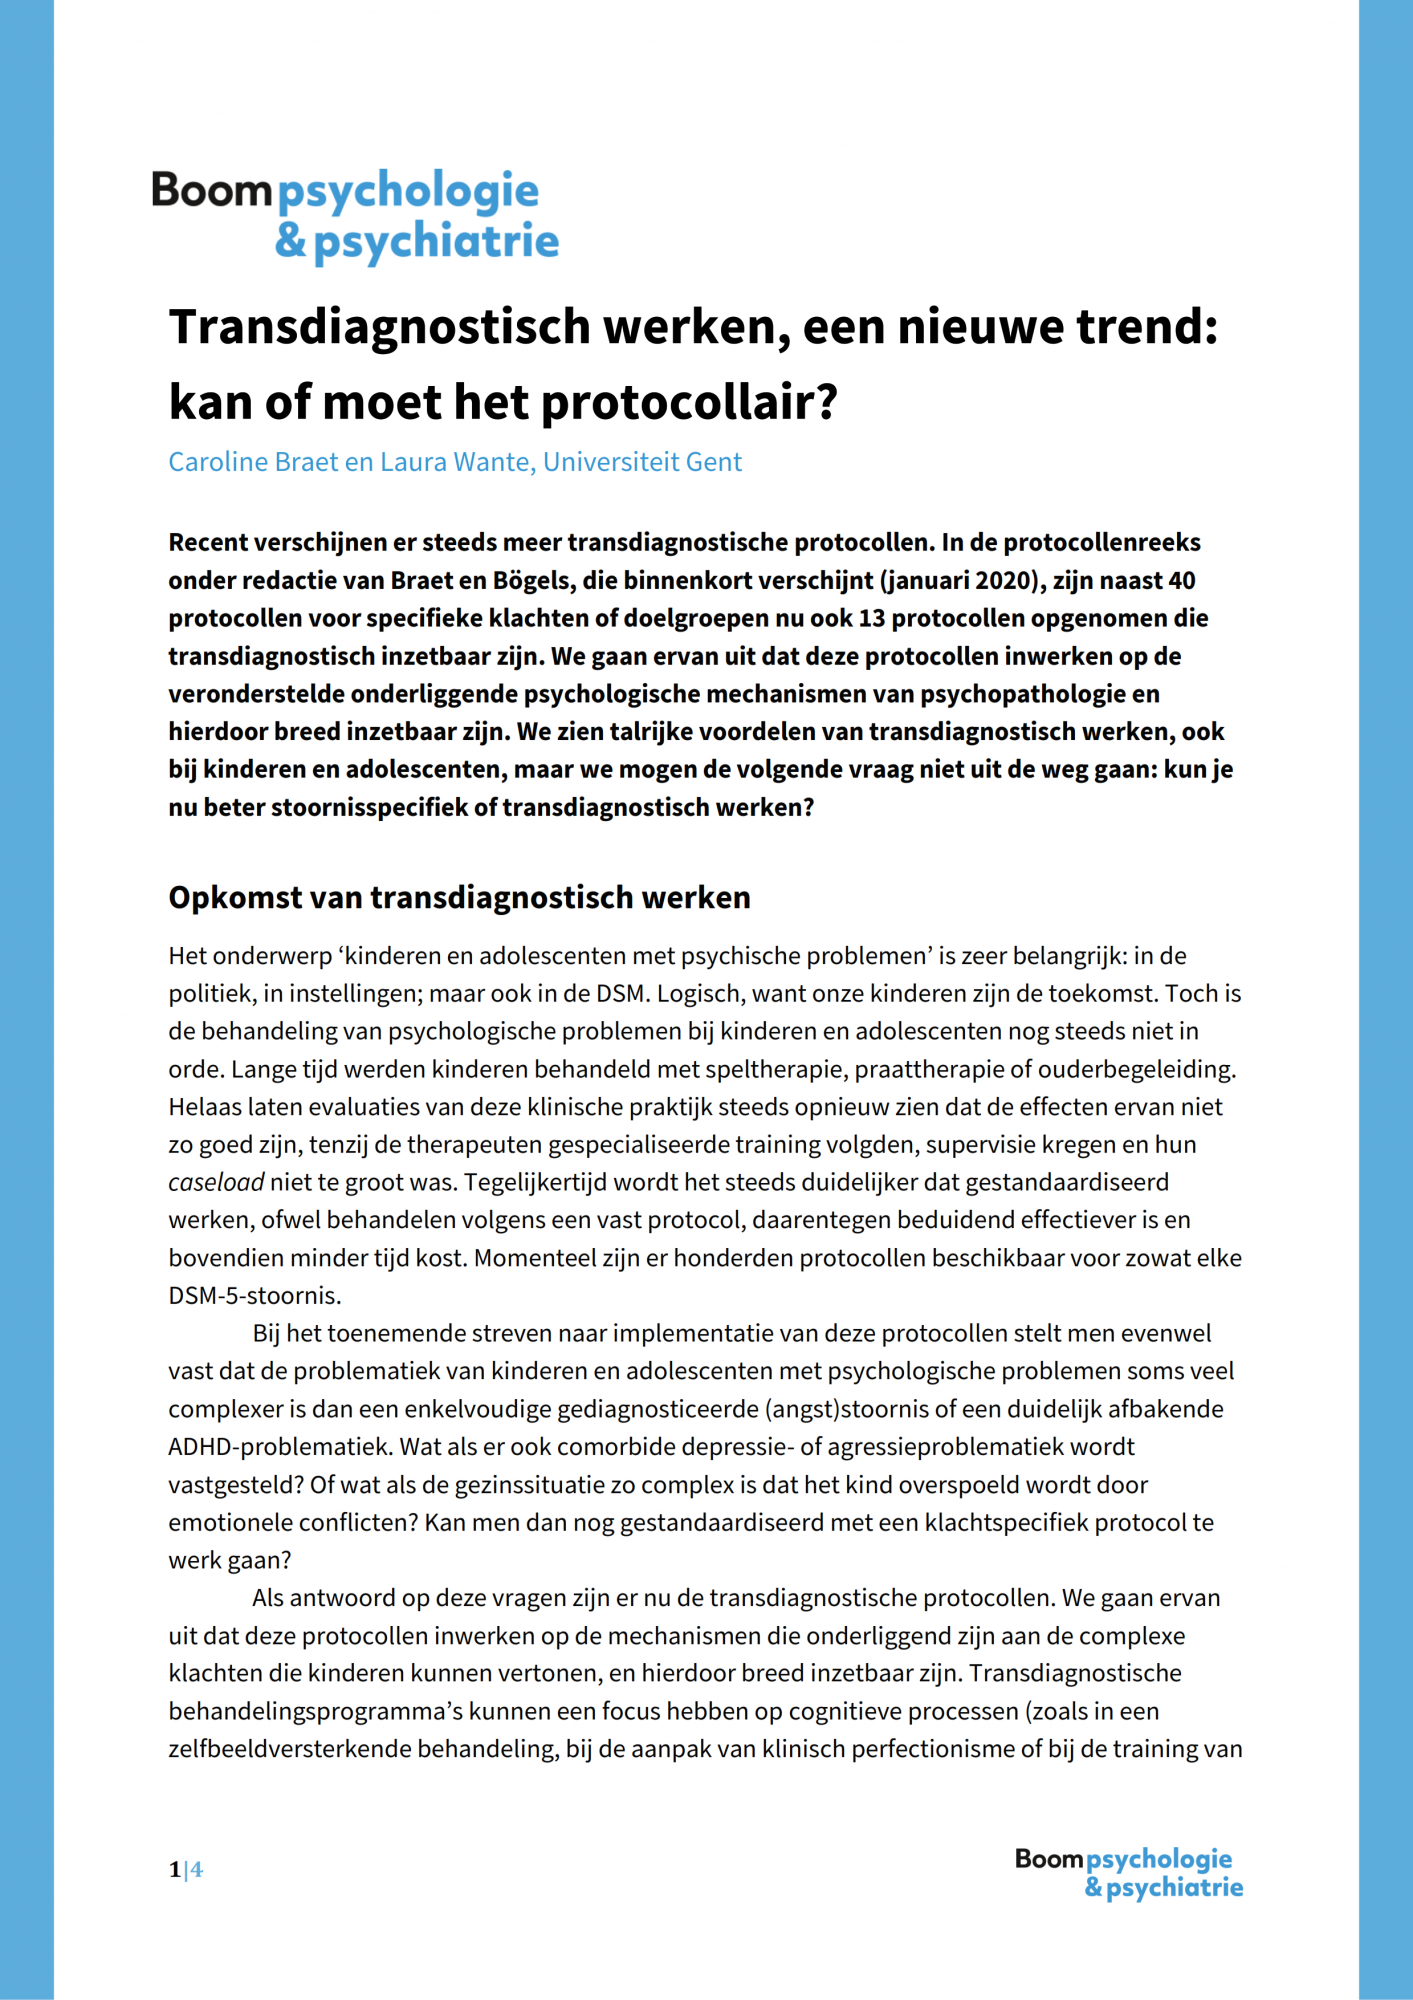 transdiagnostisch-werken-trend